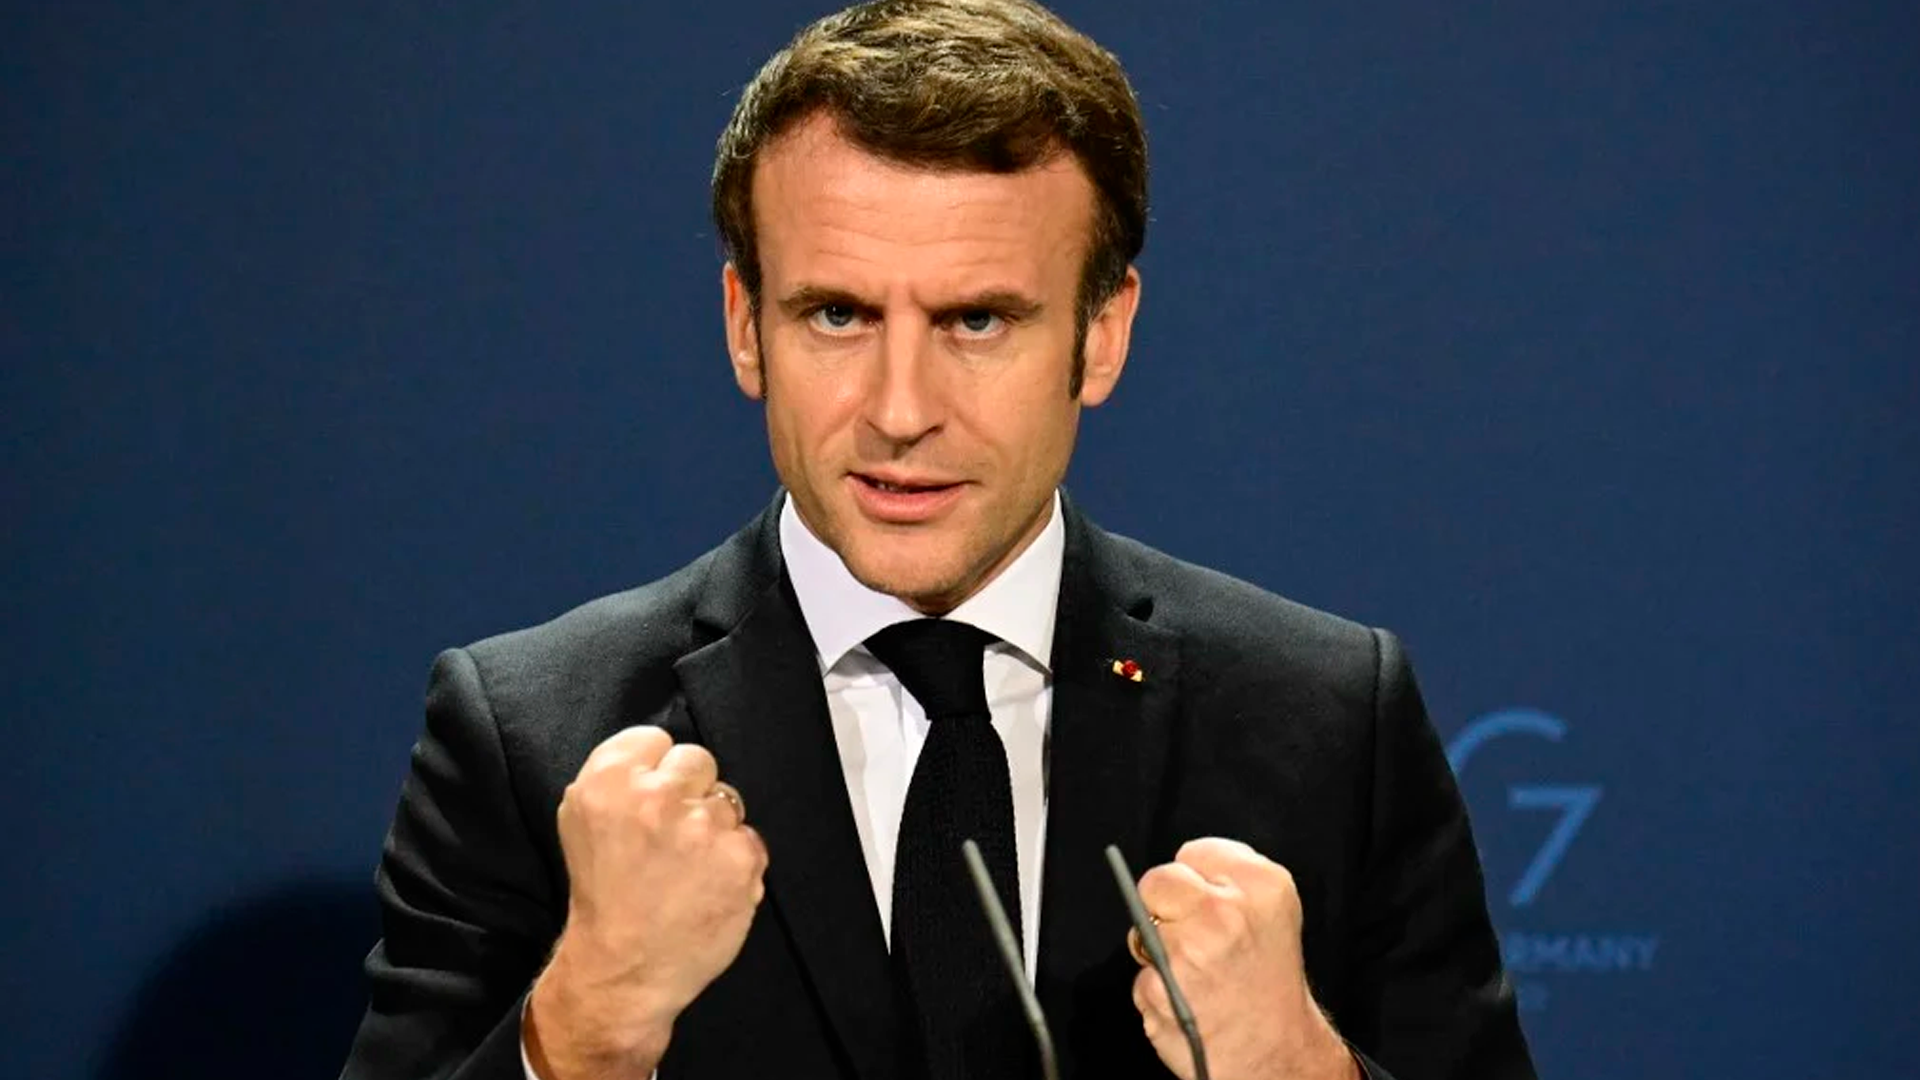 Emmanuel Macron cerra os punhos lado a lado em posição de força